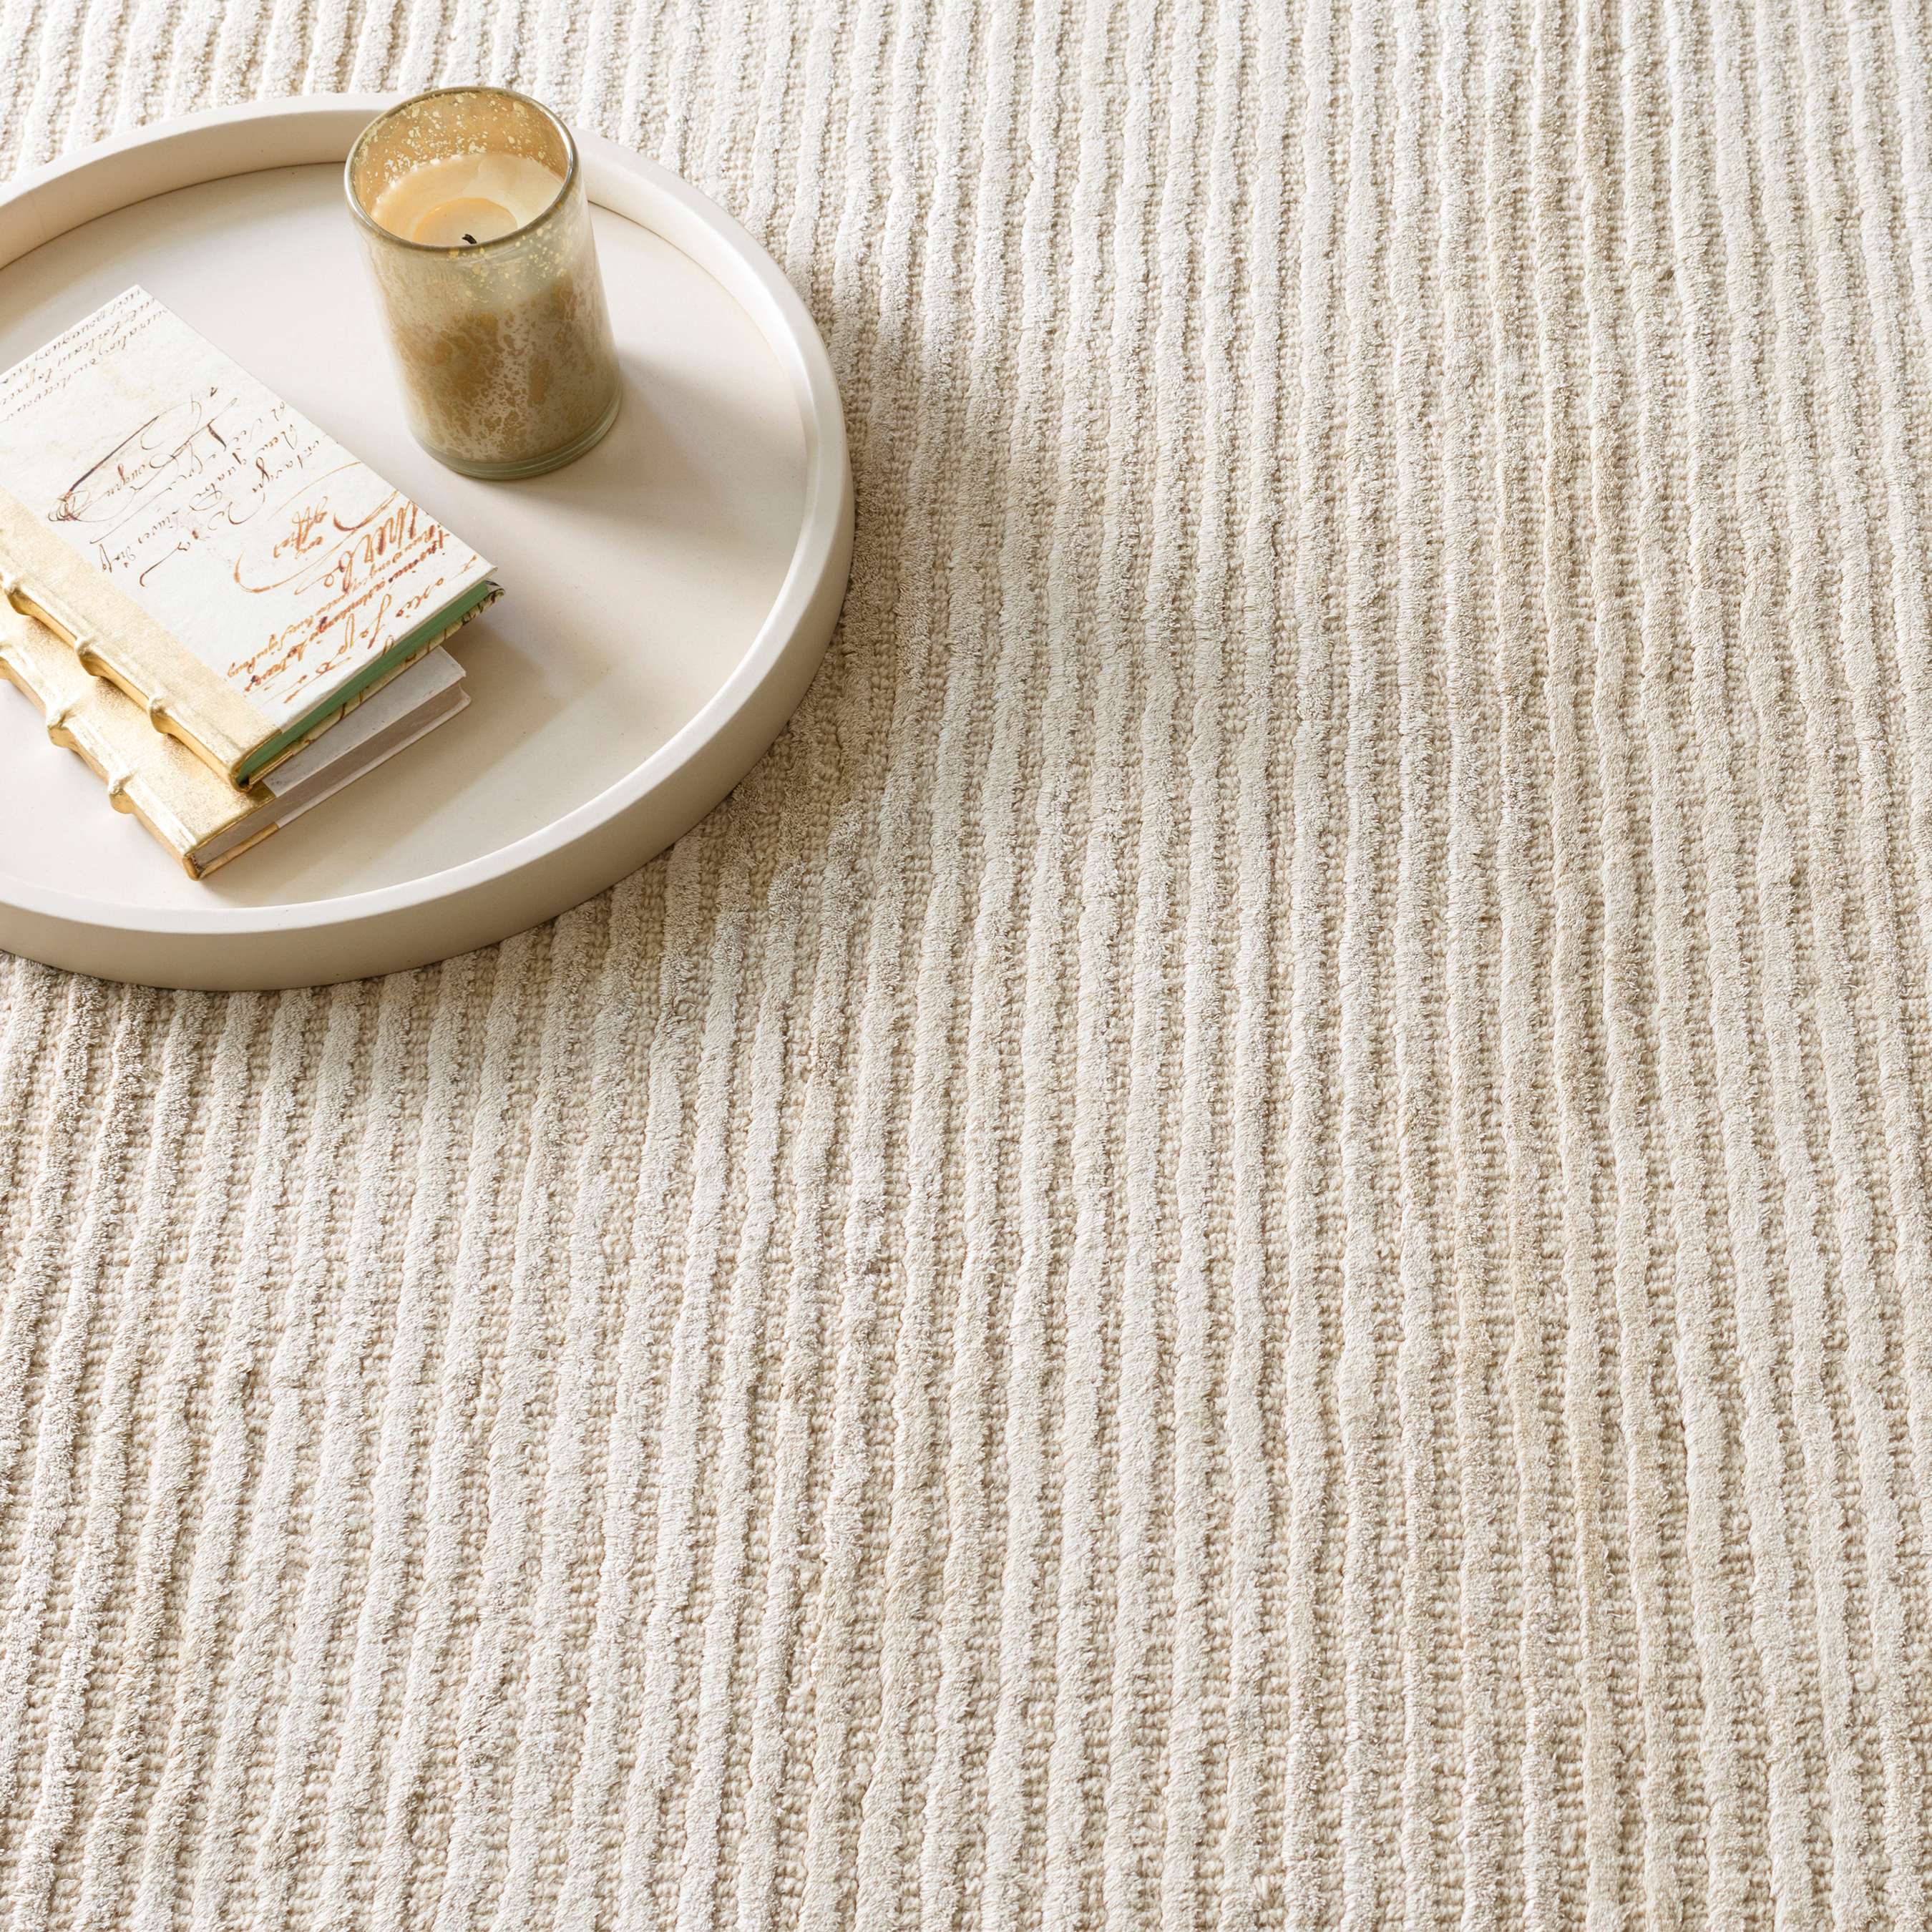 Cotton Vs Wool Rug: Tips to Choose the Best Rug Material - Vaheed Taheri